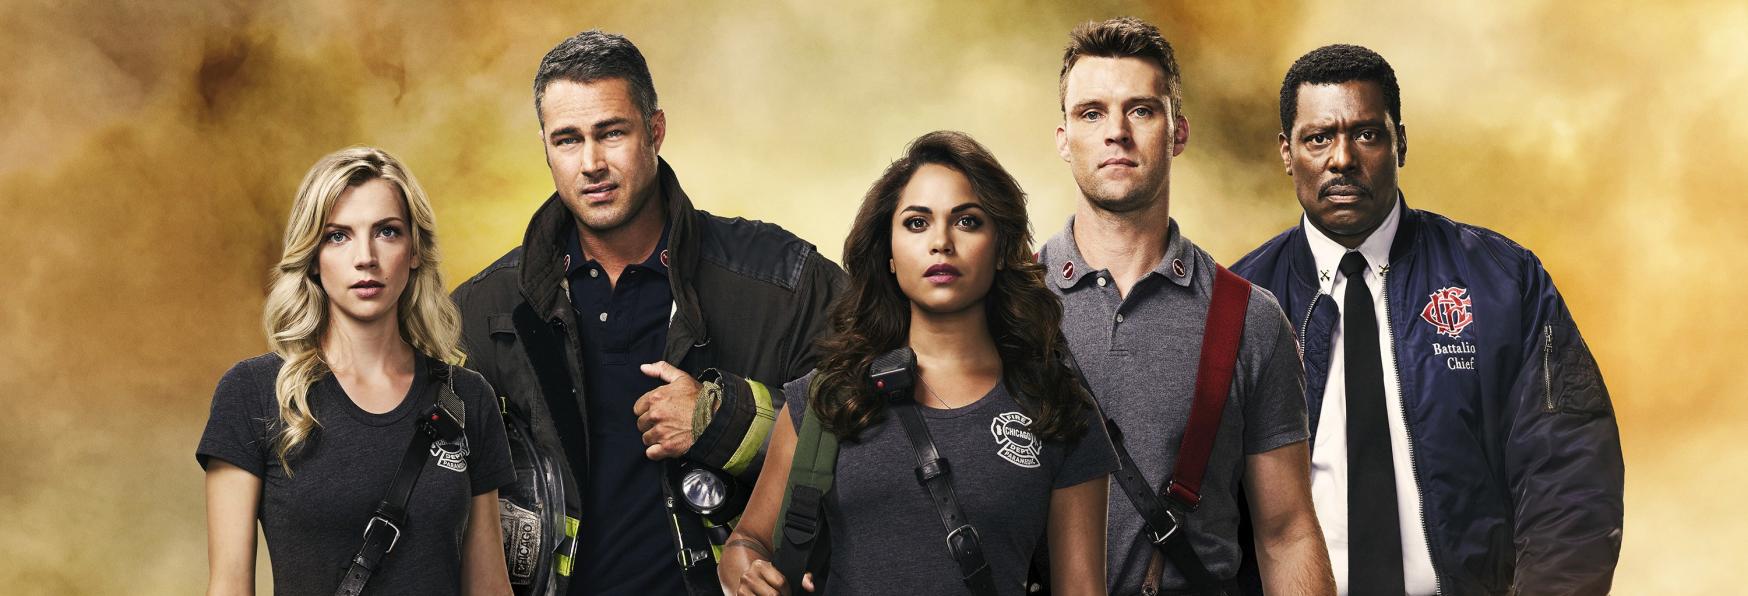 Chicago Fire 9: Trama, Cast, Data e Trailer della nuova Stagione della Serie TV NBC